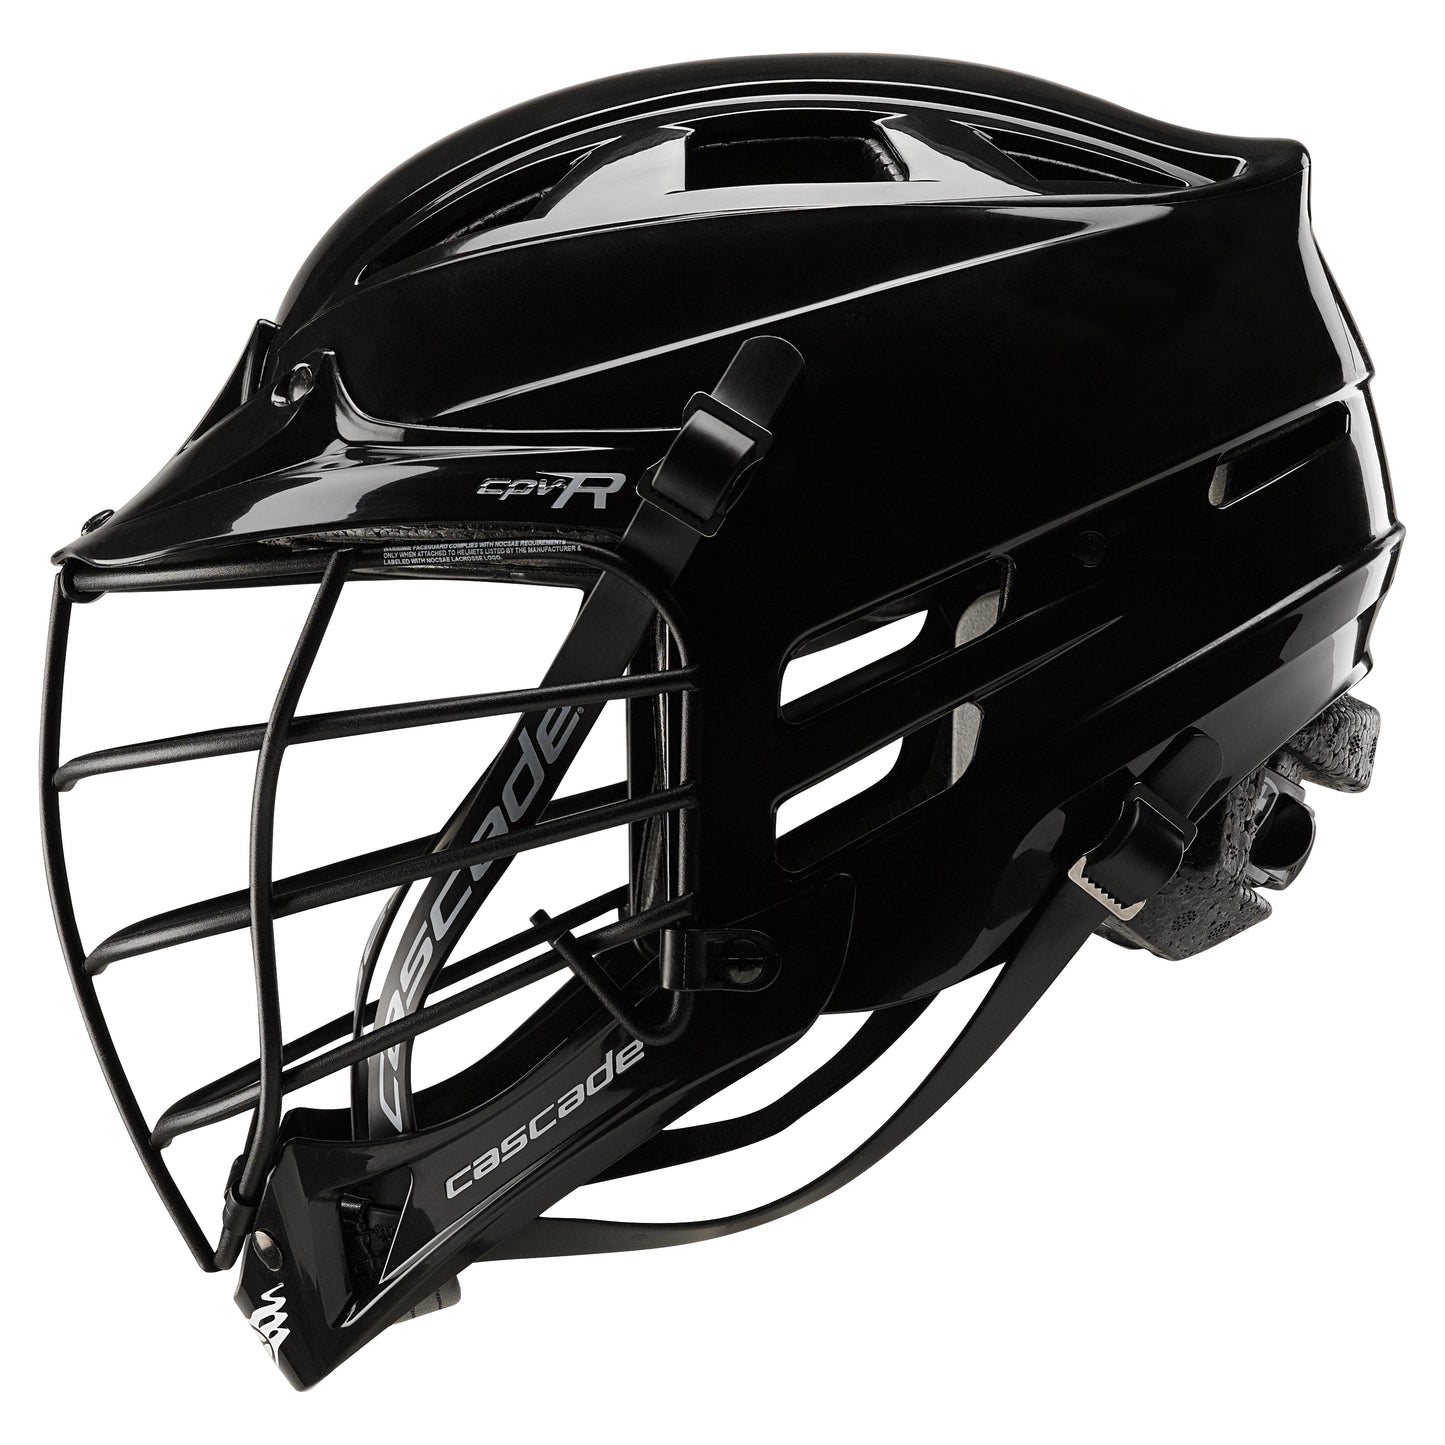 Cascade CPVR Lacrosse Helmet - Custom Design